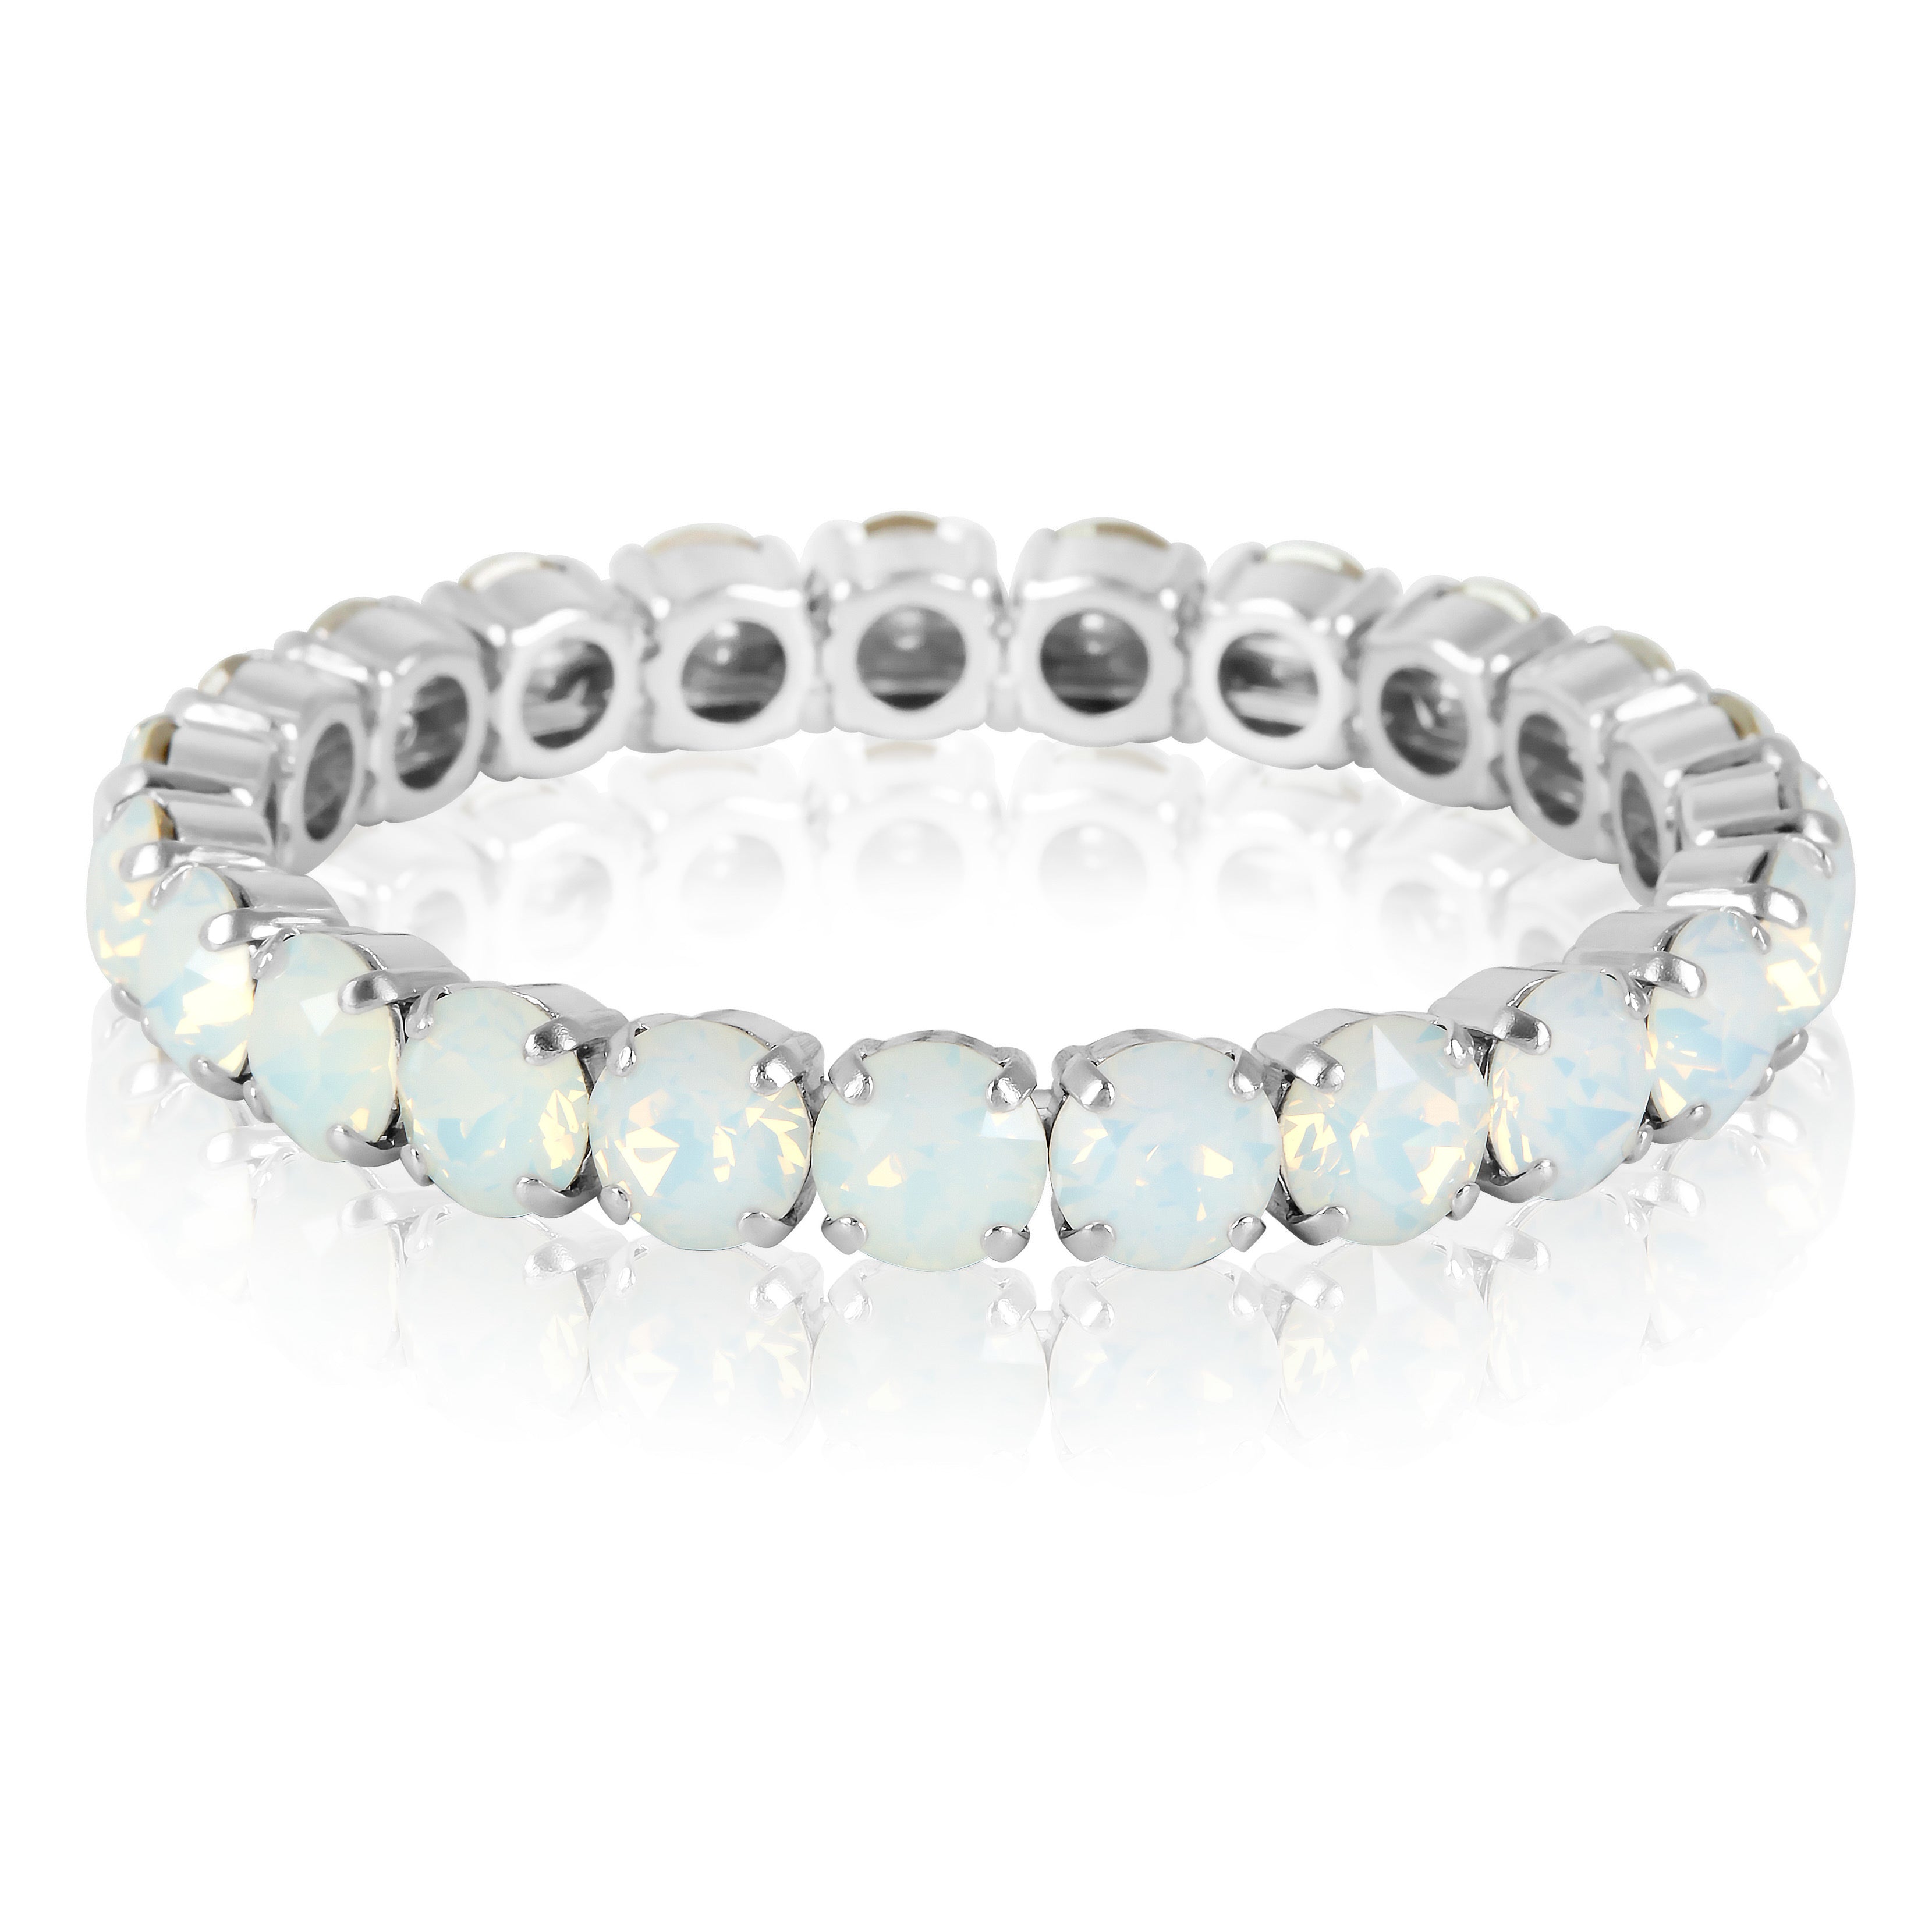 Silver Bracelet, Statement Bracelet, Wedding Bangle, Going Out Bracelet, Swarovski Bracelet, Opal Bracelet, Beautiful Bracelet, Blue Bracelet